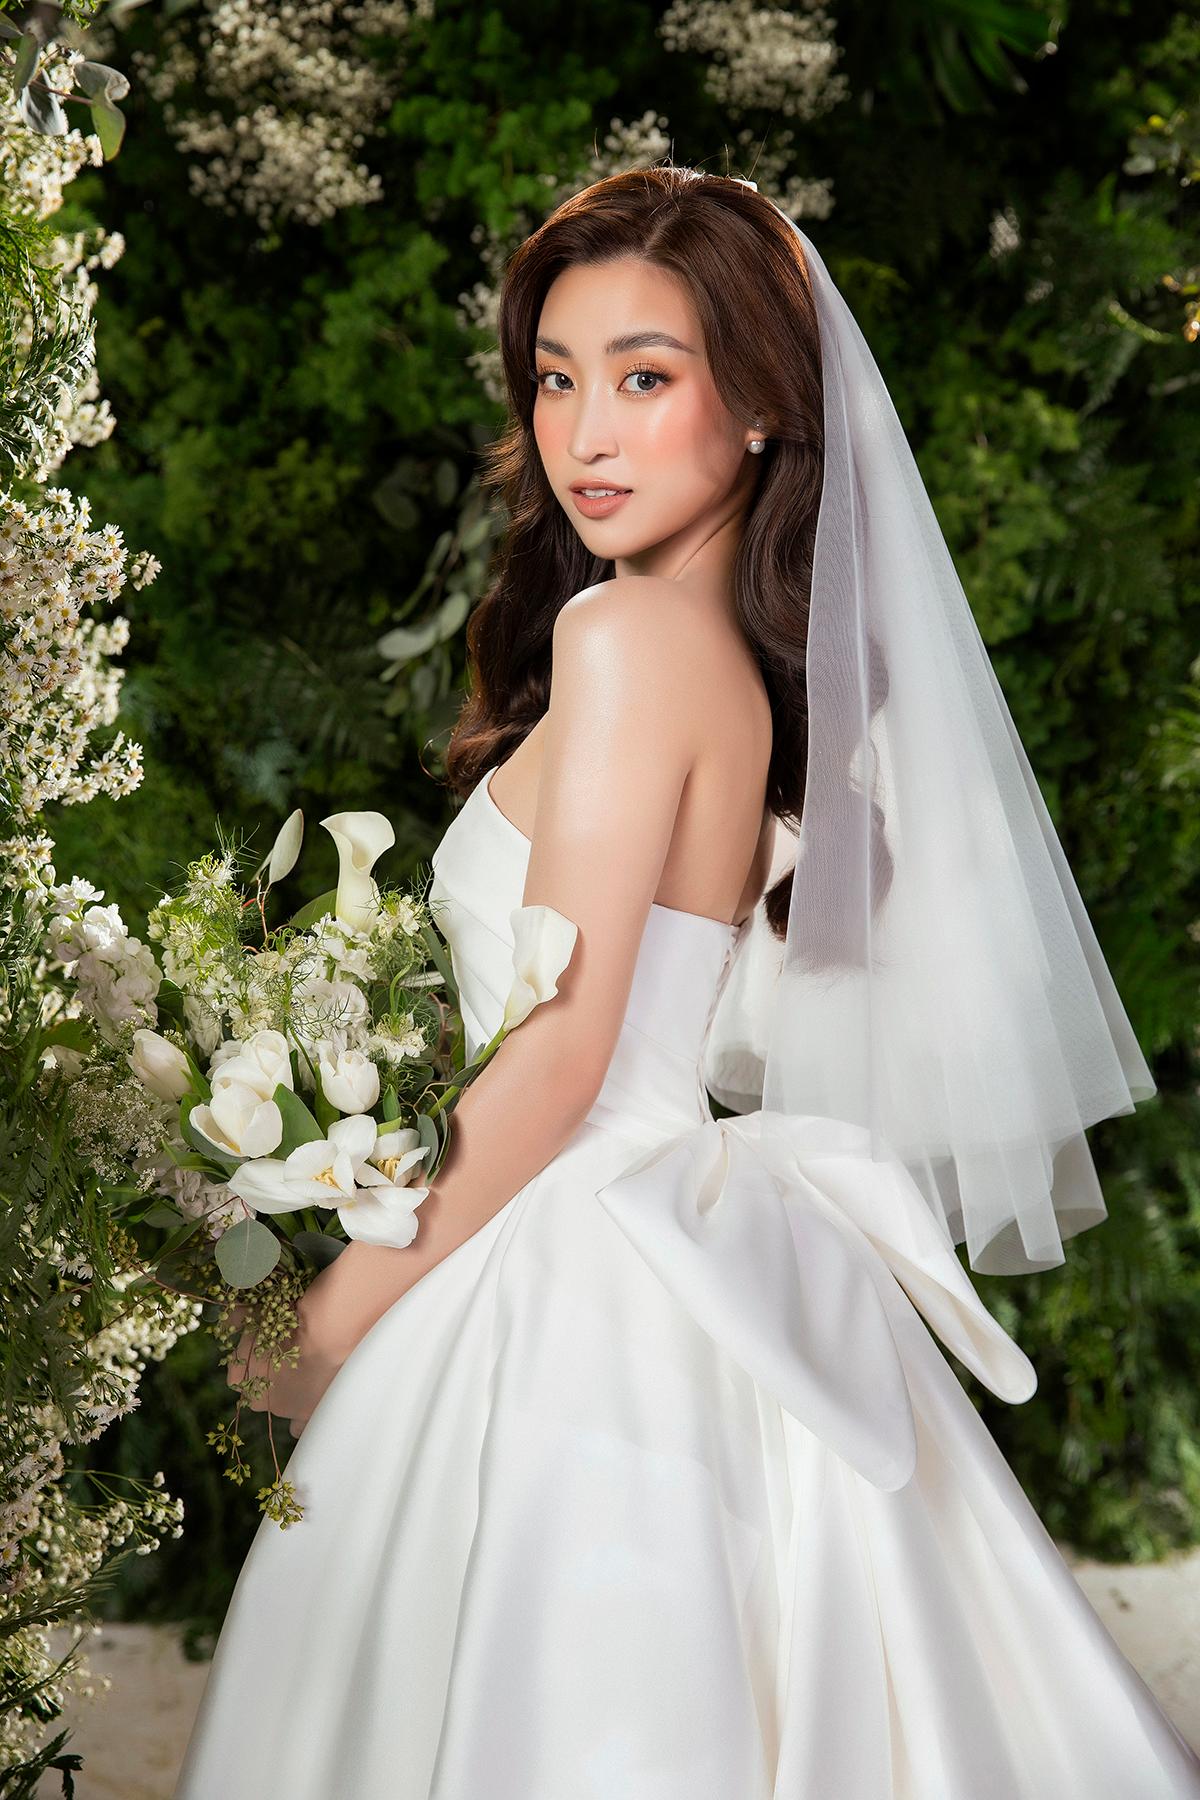 Hoa hậu Đỗ Mỹ Linh được cầu hôn, hé lộ danh tính đàng trai - Ảnh 2.